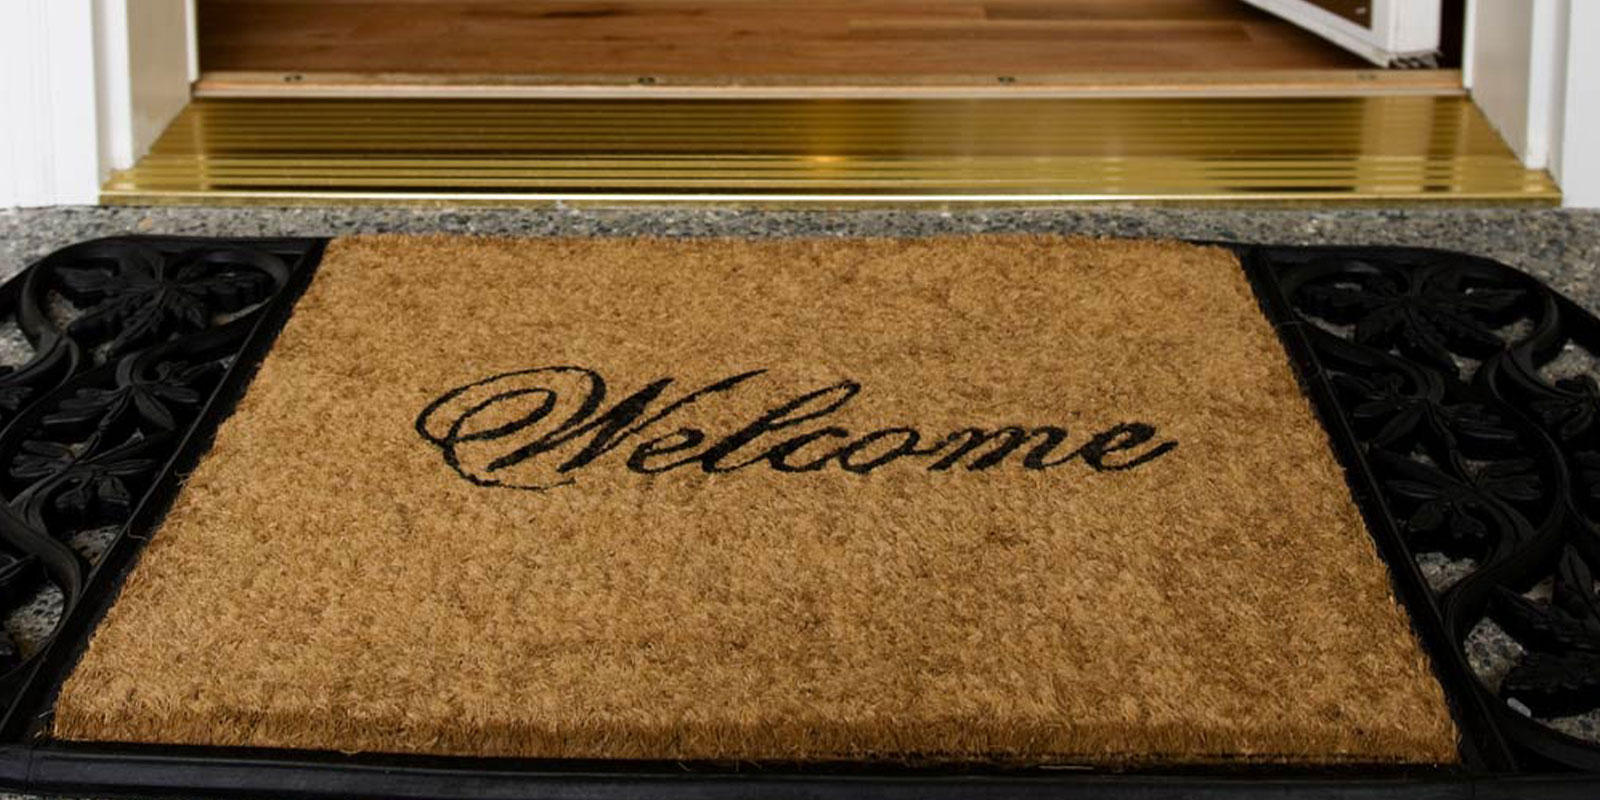 Door mat that says 'Welcome' in cursive